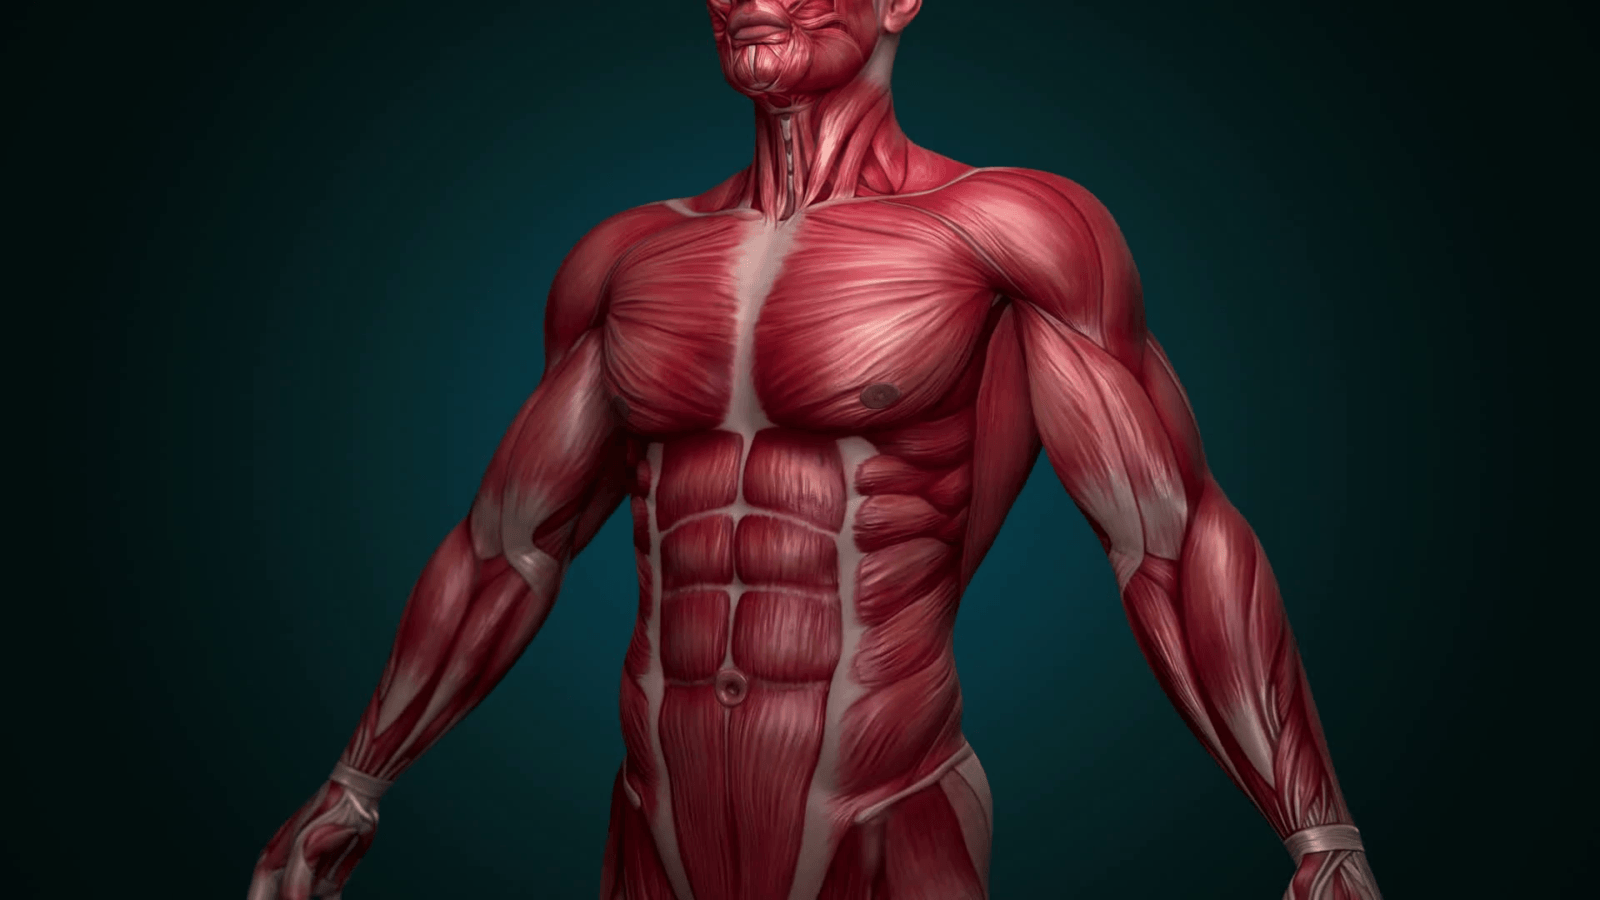 Анатомия мышц спины: строение и функции глубоких, поверхностных и широчайшей. таблица положения